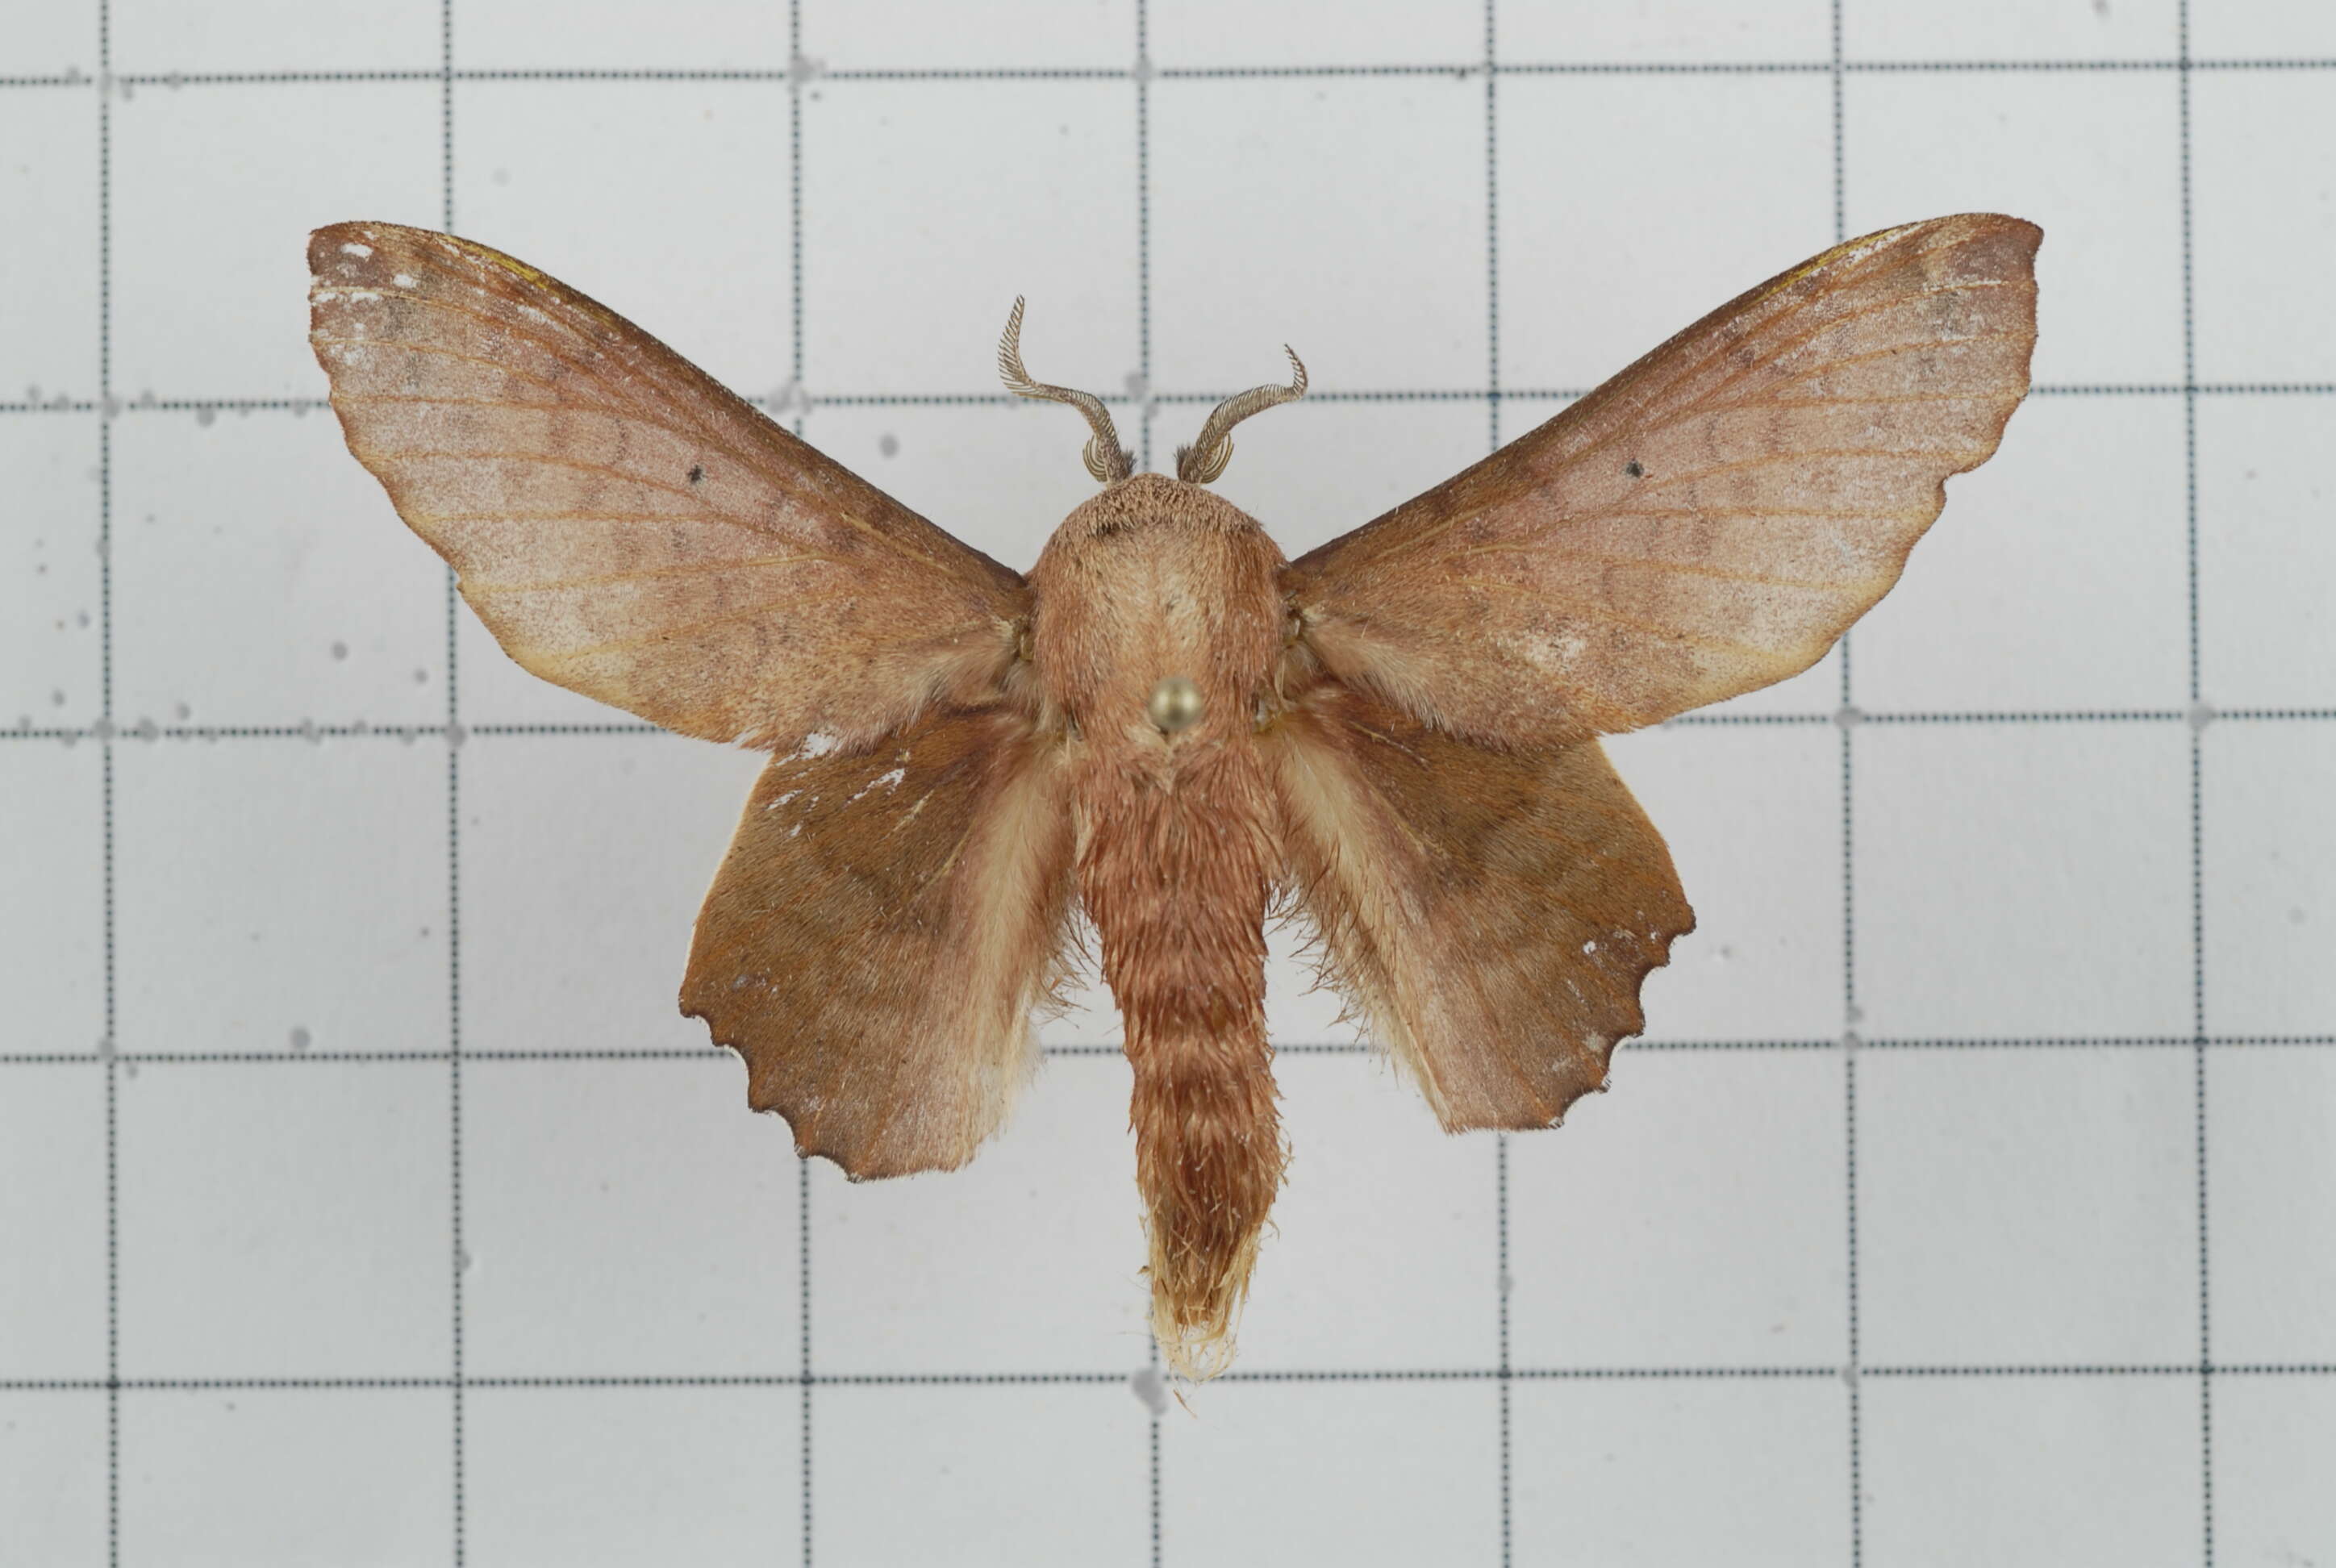 Image of Paradoxopla sinuata Moore 1879